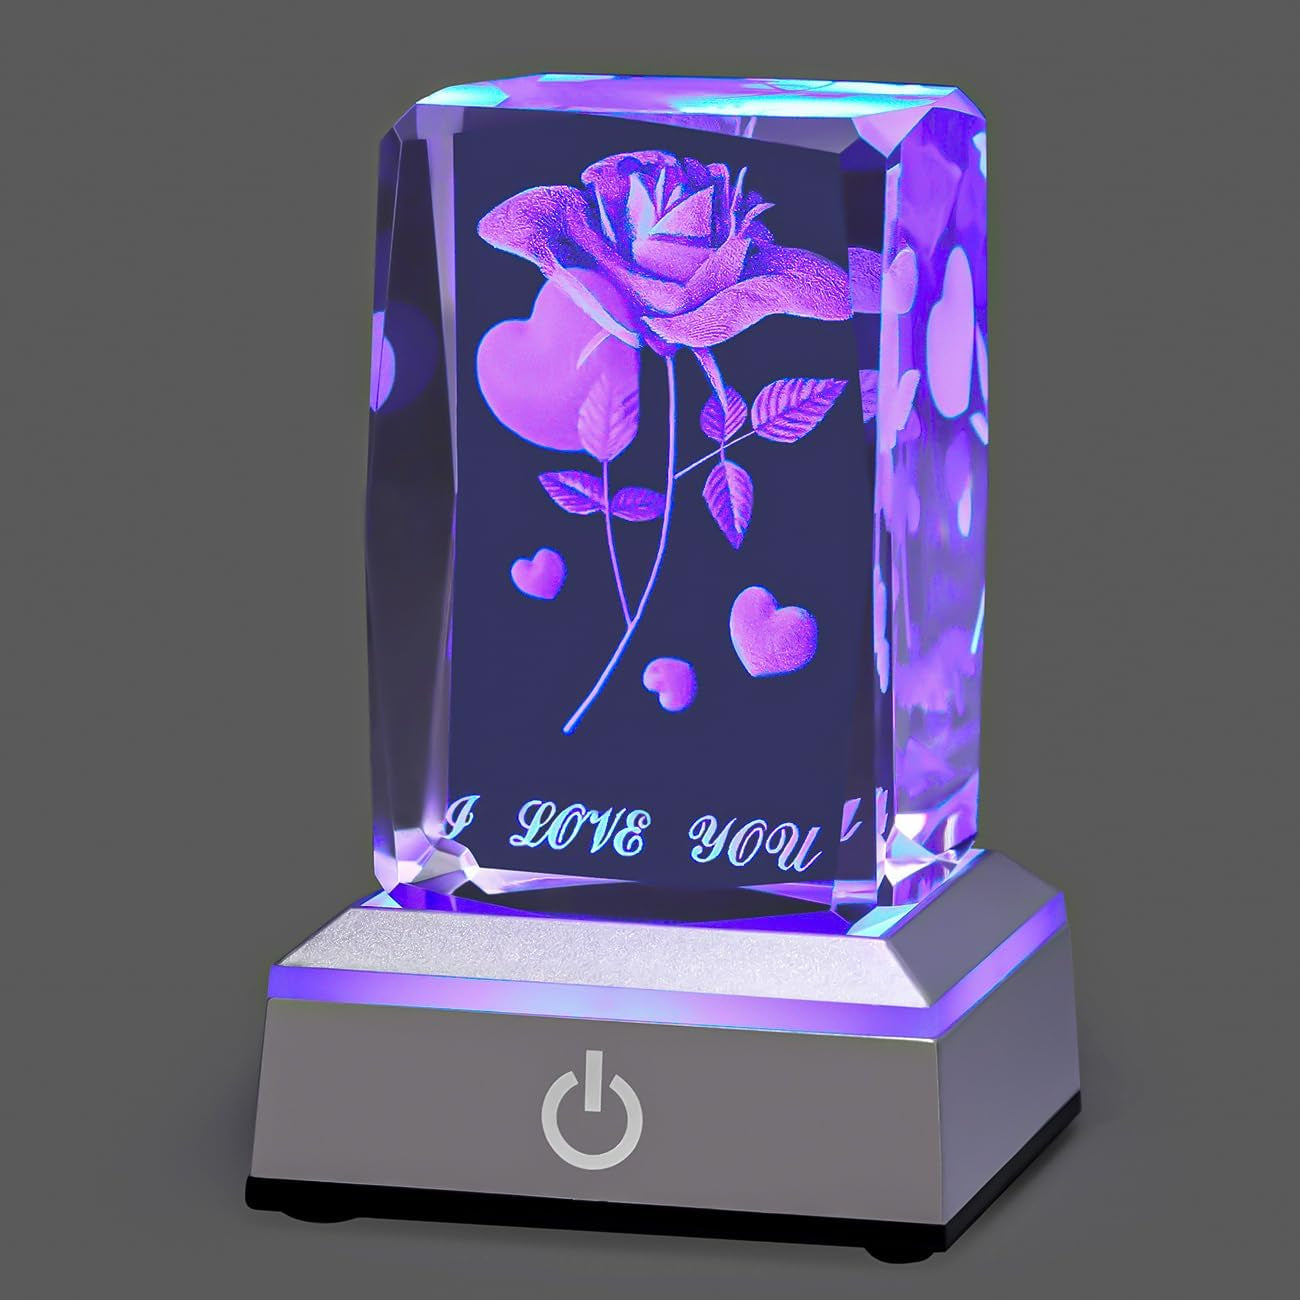 3D Rose Crystal Multicolor Nightlight 